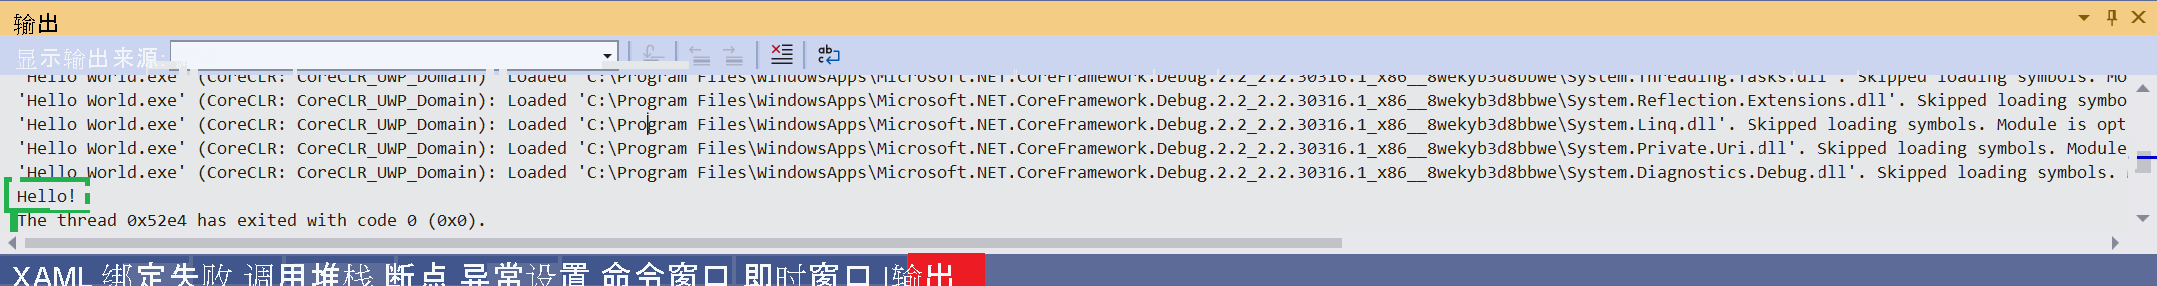 显示 Visual Studio 输出窗口的屏幕截图，其中显示了“Hello!”消息。